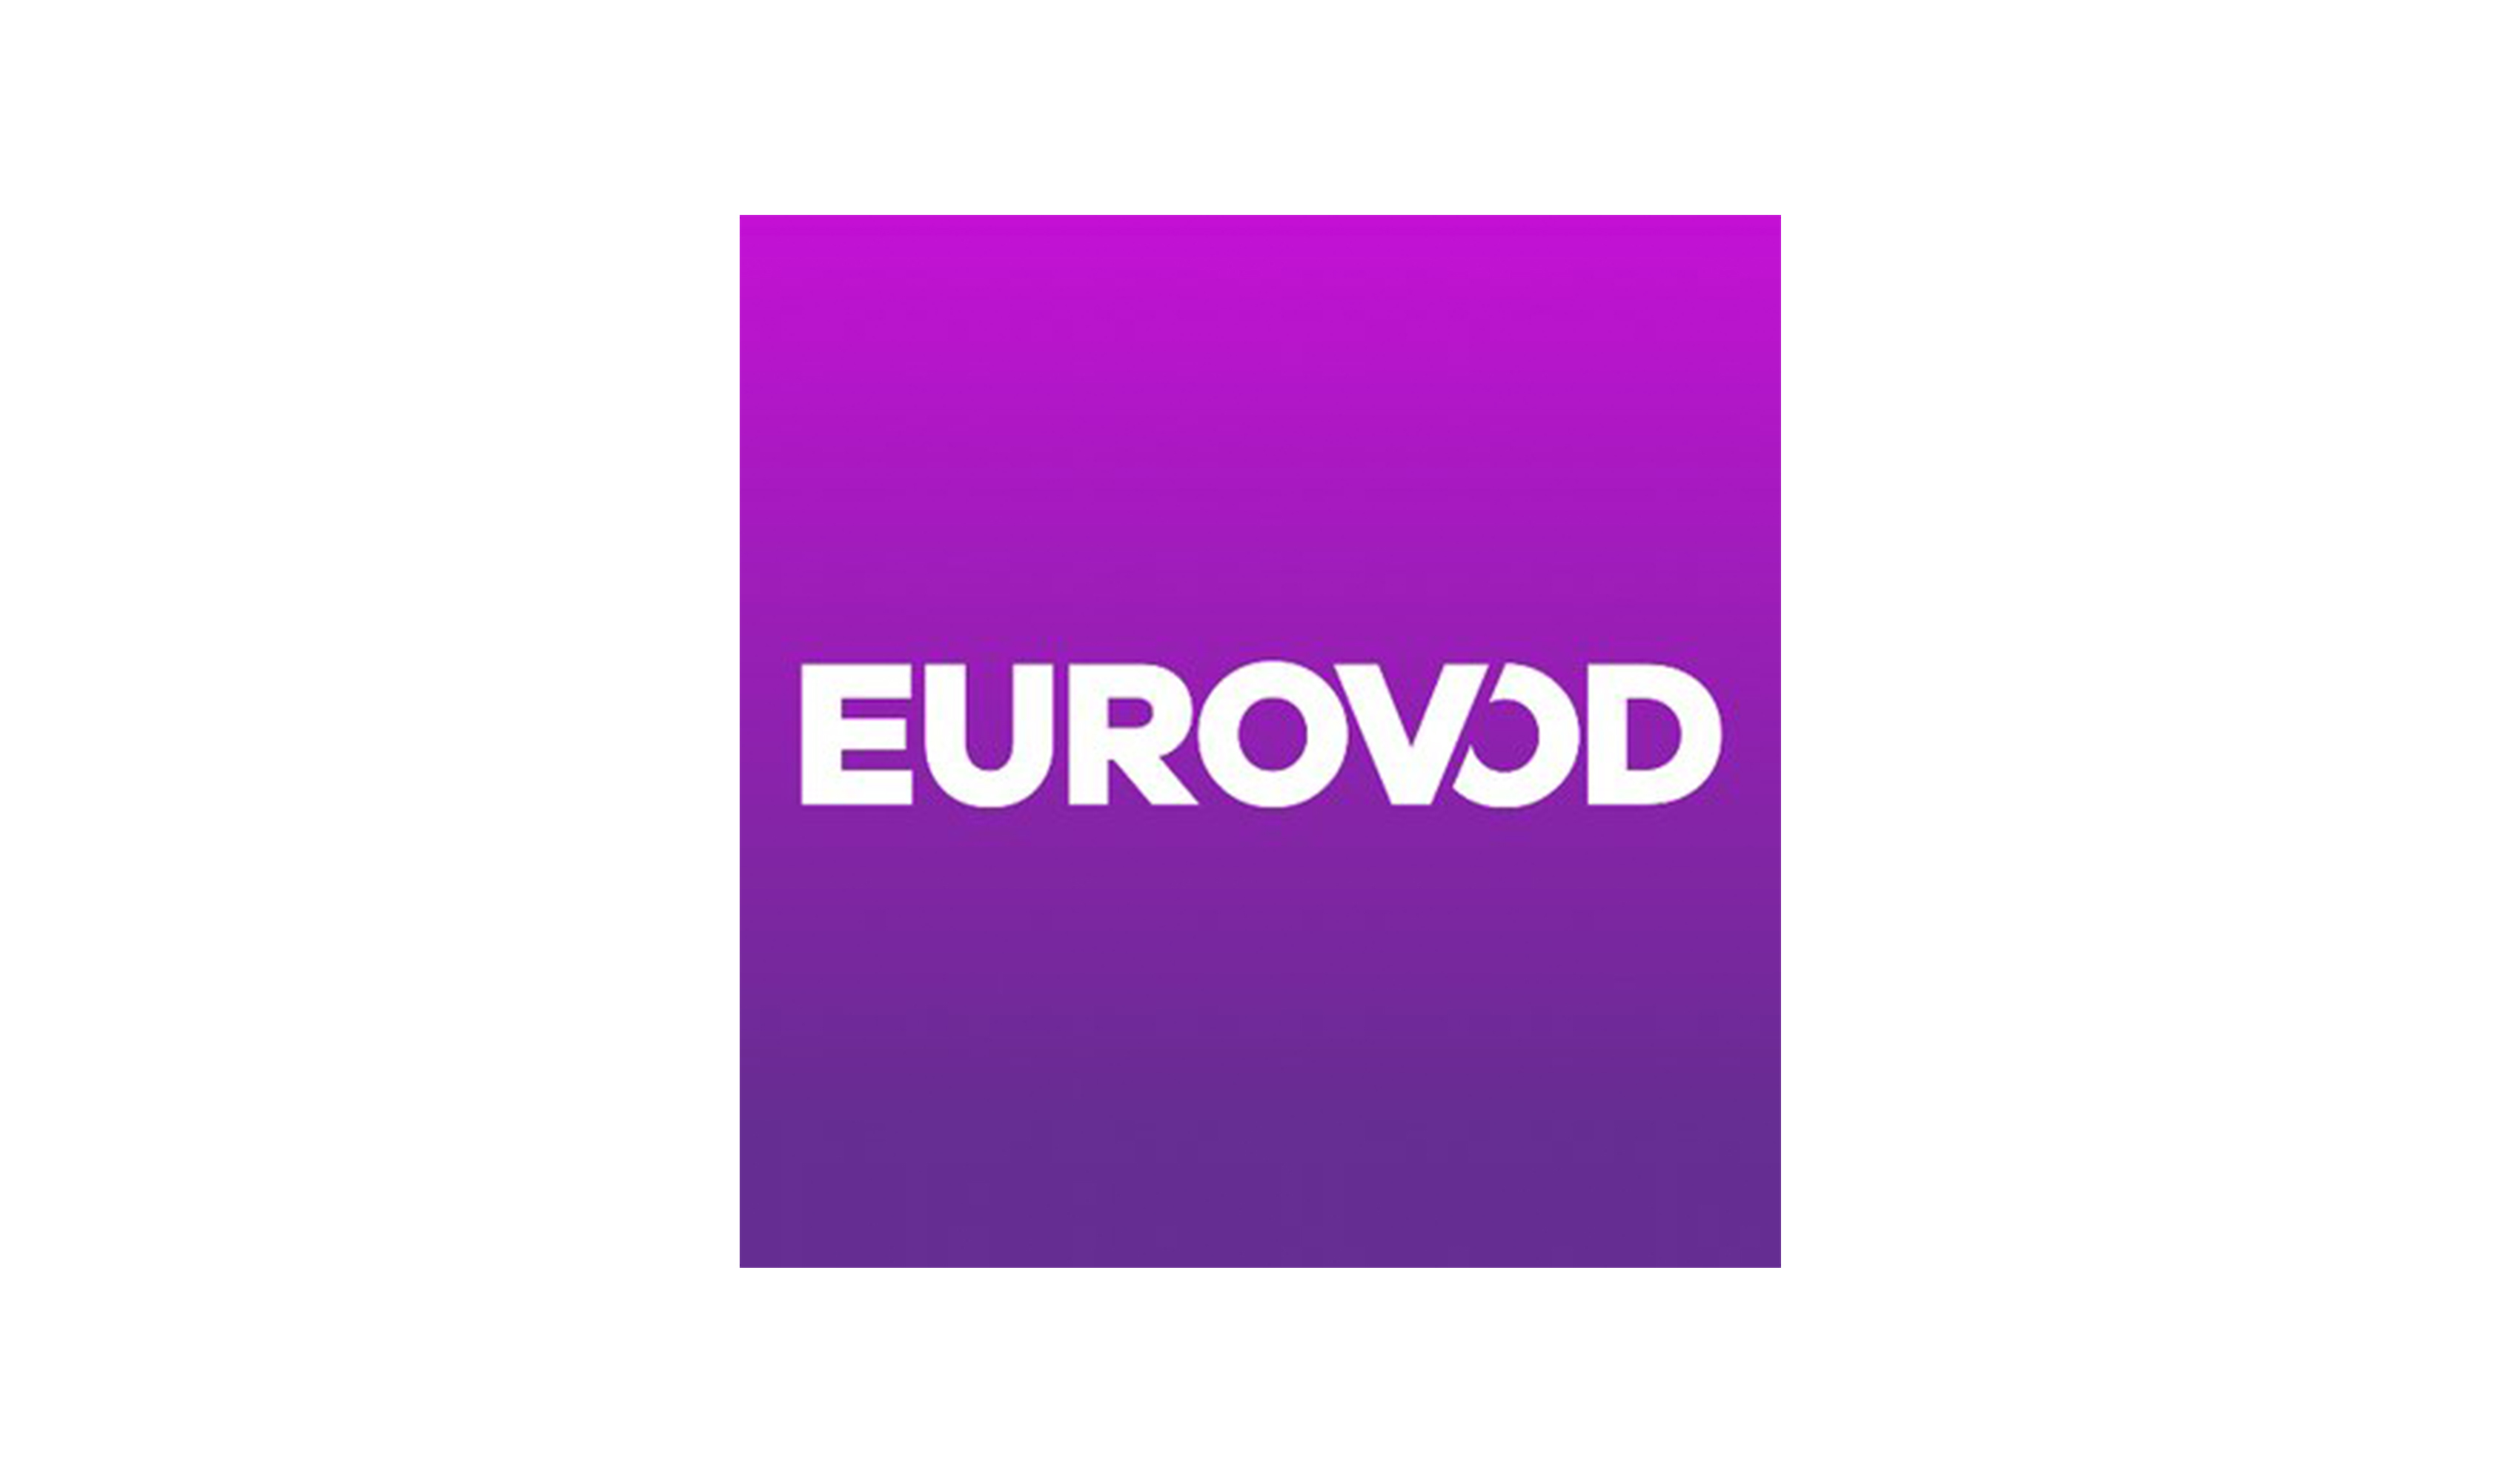 EUROVOD